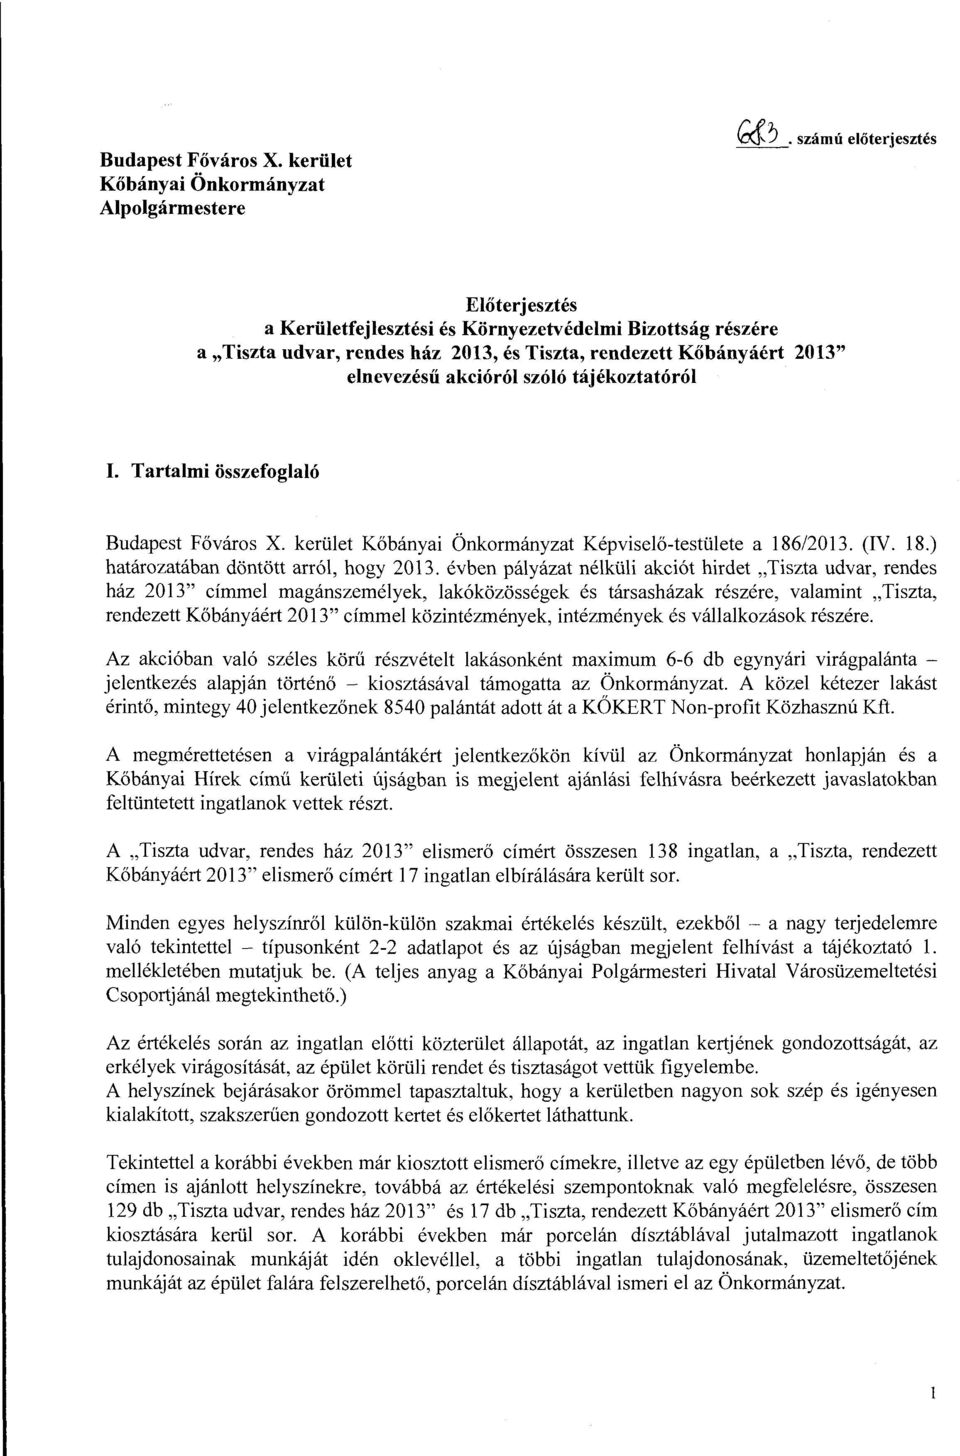 tájékoztatóról I. Tartalmi összefoglaló Budapest Főváros X. kerület Kőbányai Önkormányzat Képviselő-testülete a 186/2013. (IV. 18.) határozatában döntött arról, hogy 2013.